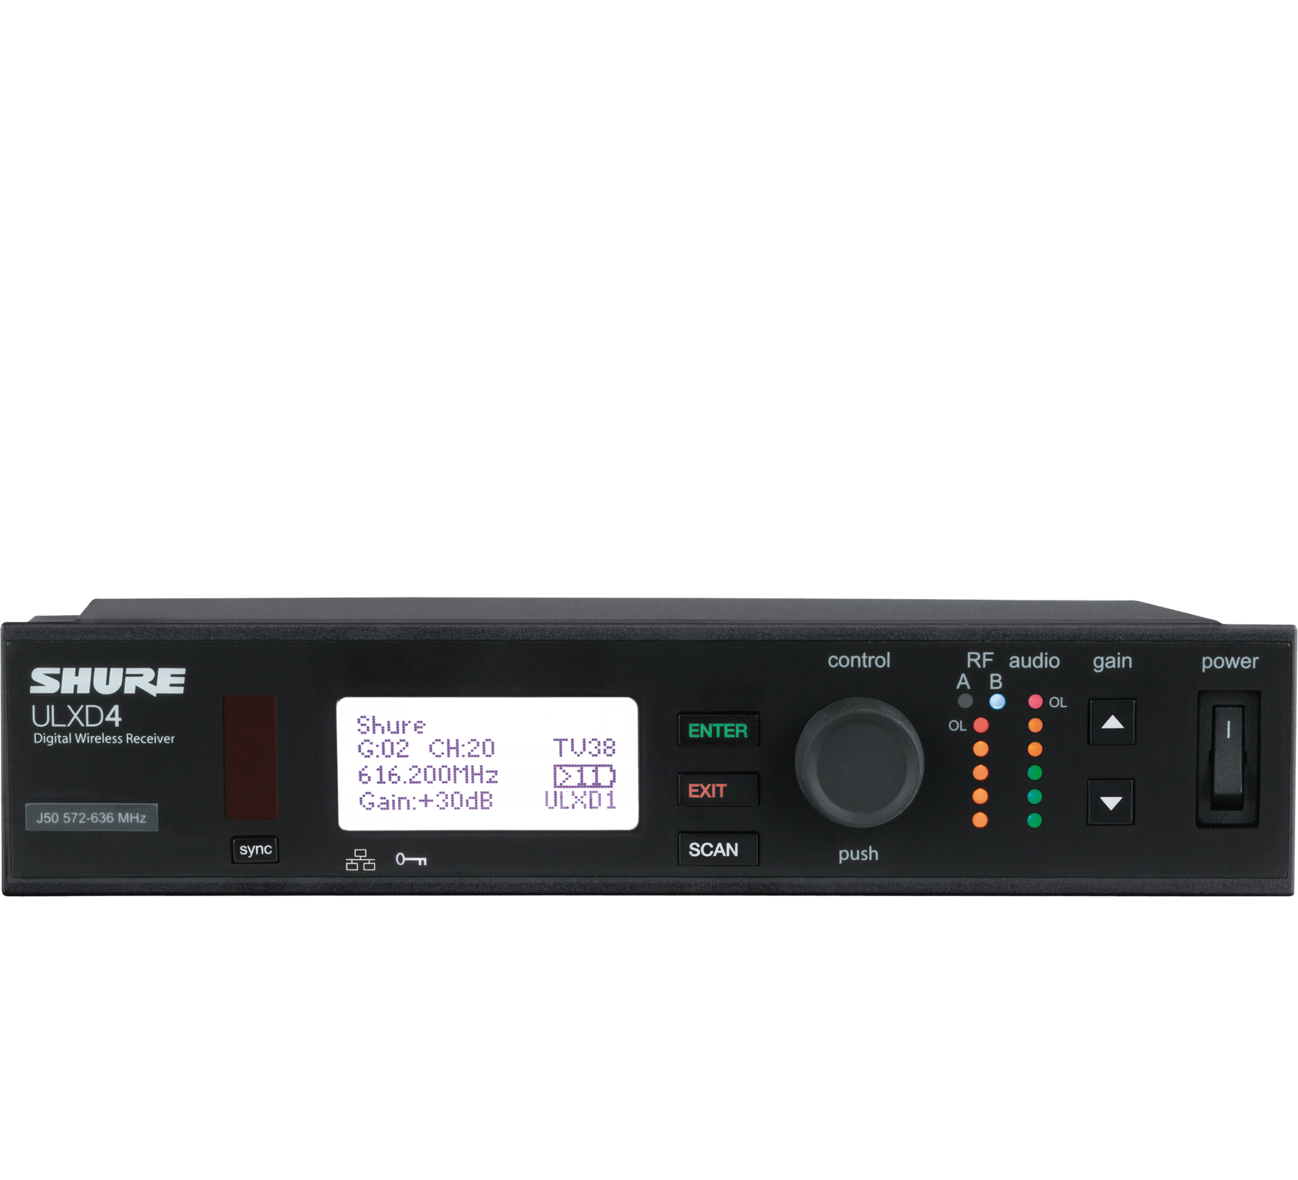 SHURE ULXD4E=-G51 цифровой одноканальный приемник 470-534 МГц, съемные антенны, крепление в рек. Черный